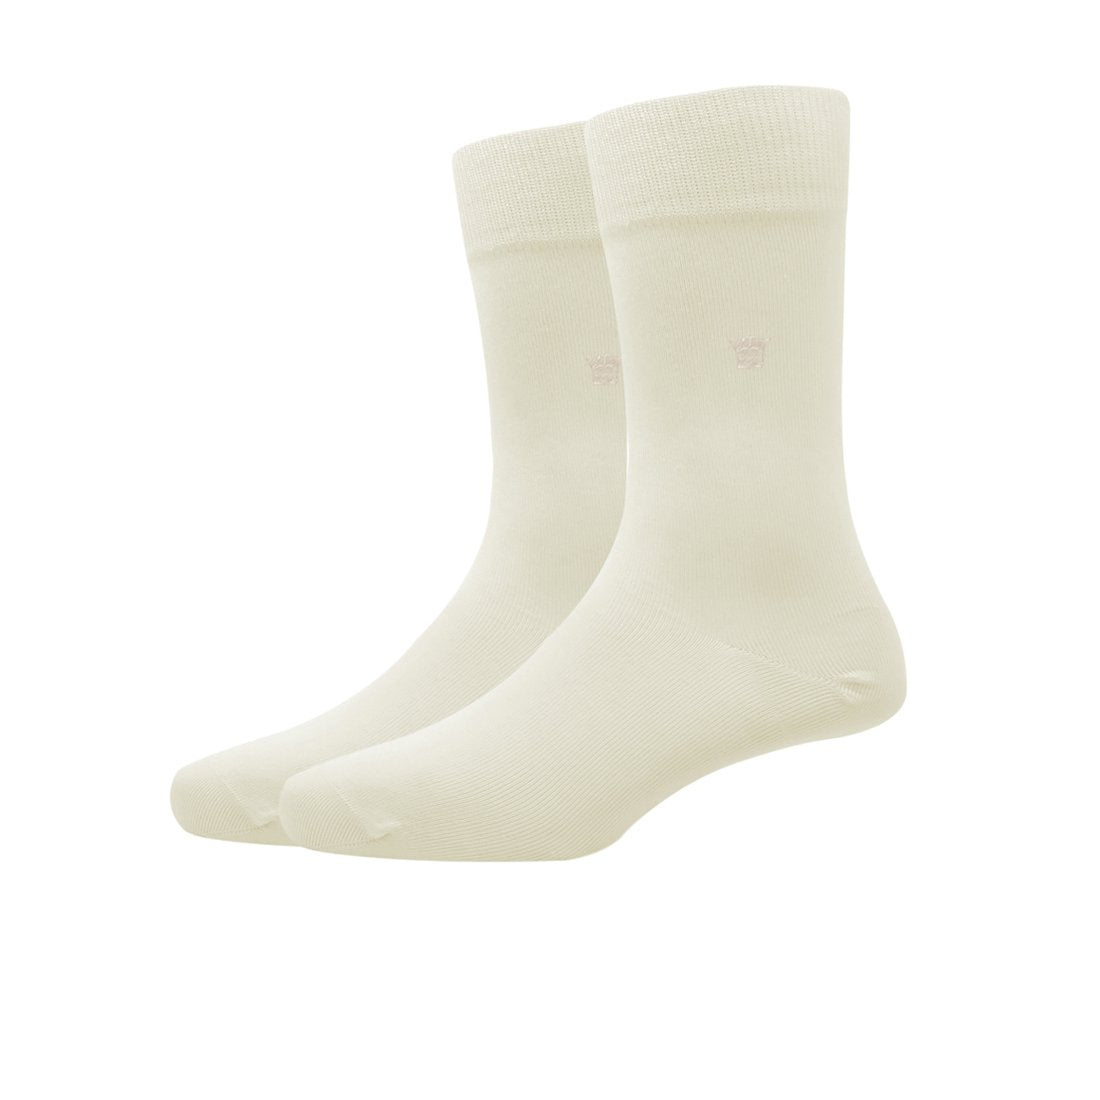 Louis Philippe Full Length Men's Plain Pattern Socks - Cream (1 Pair)